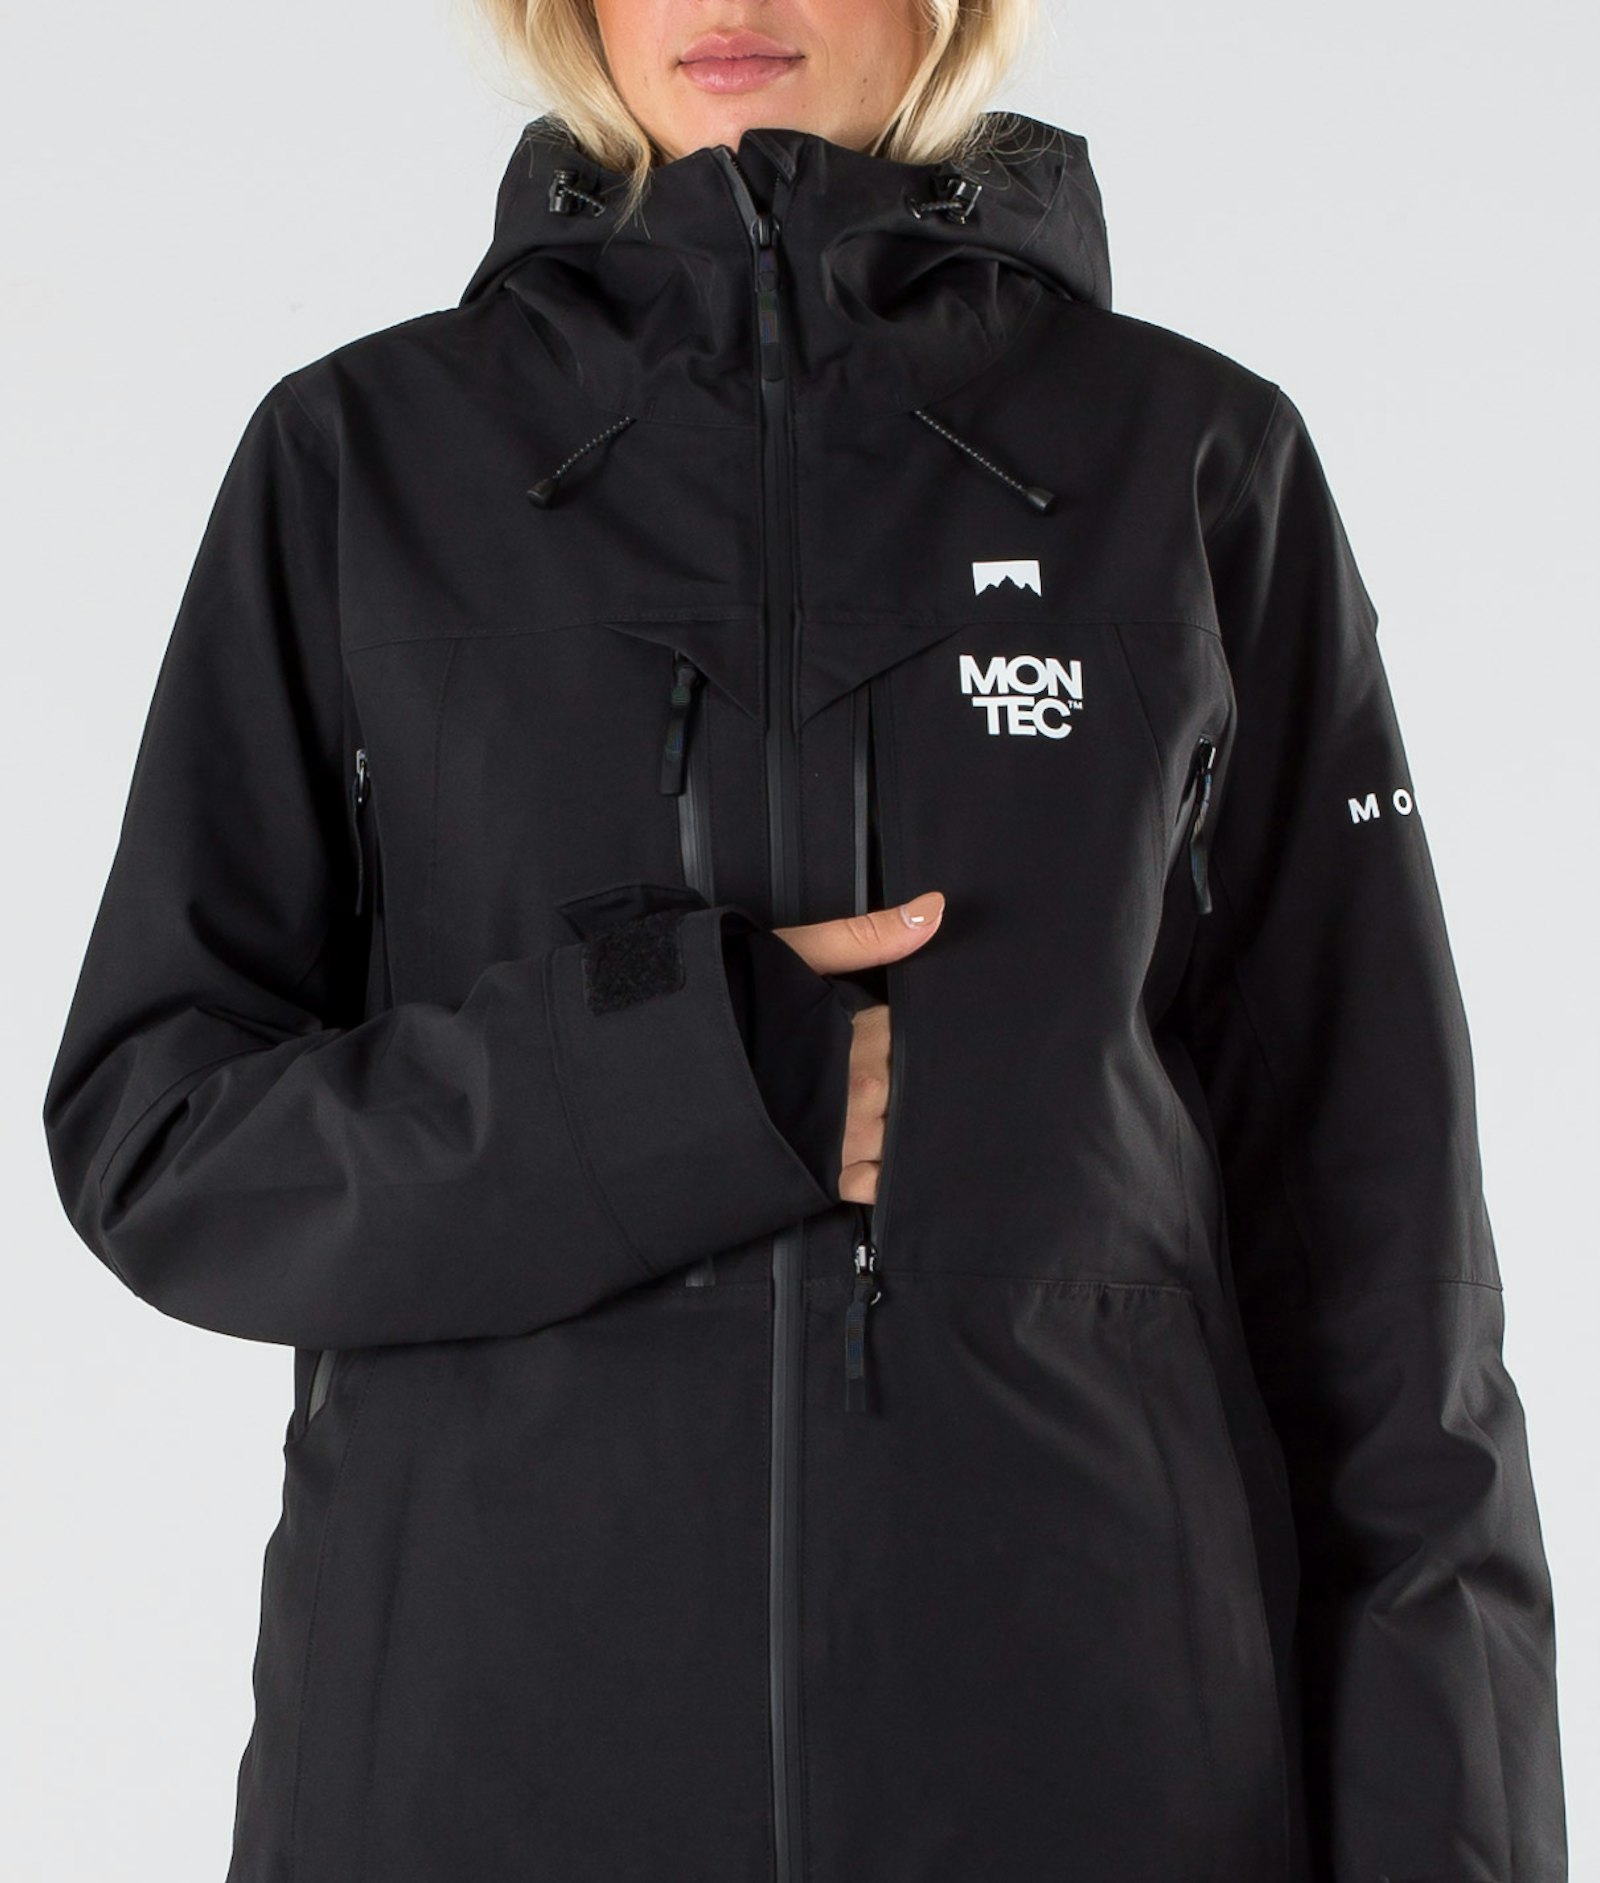 Moss W 2019 Snowboard Jacket Women Black